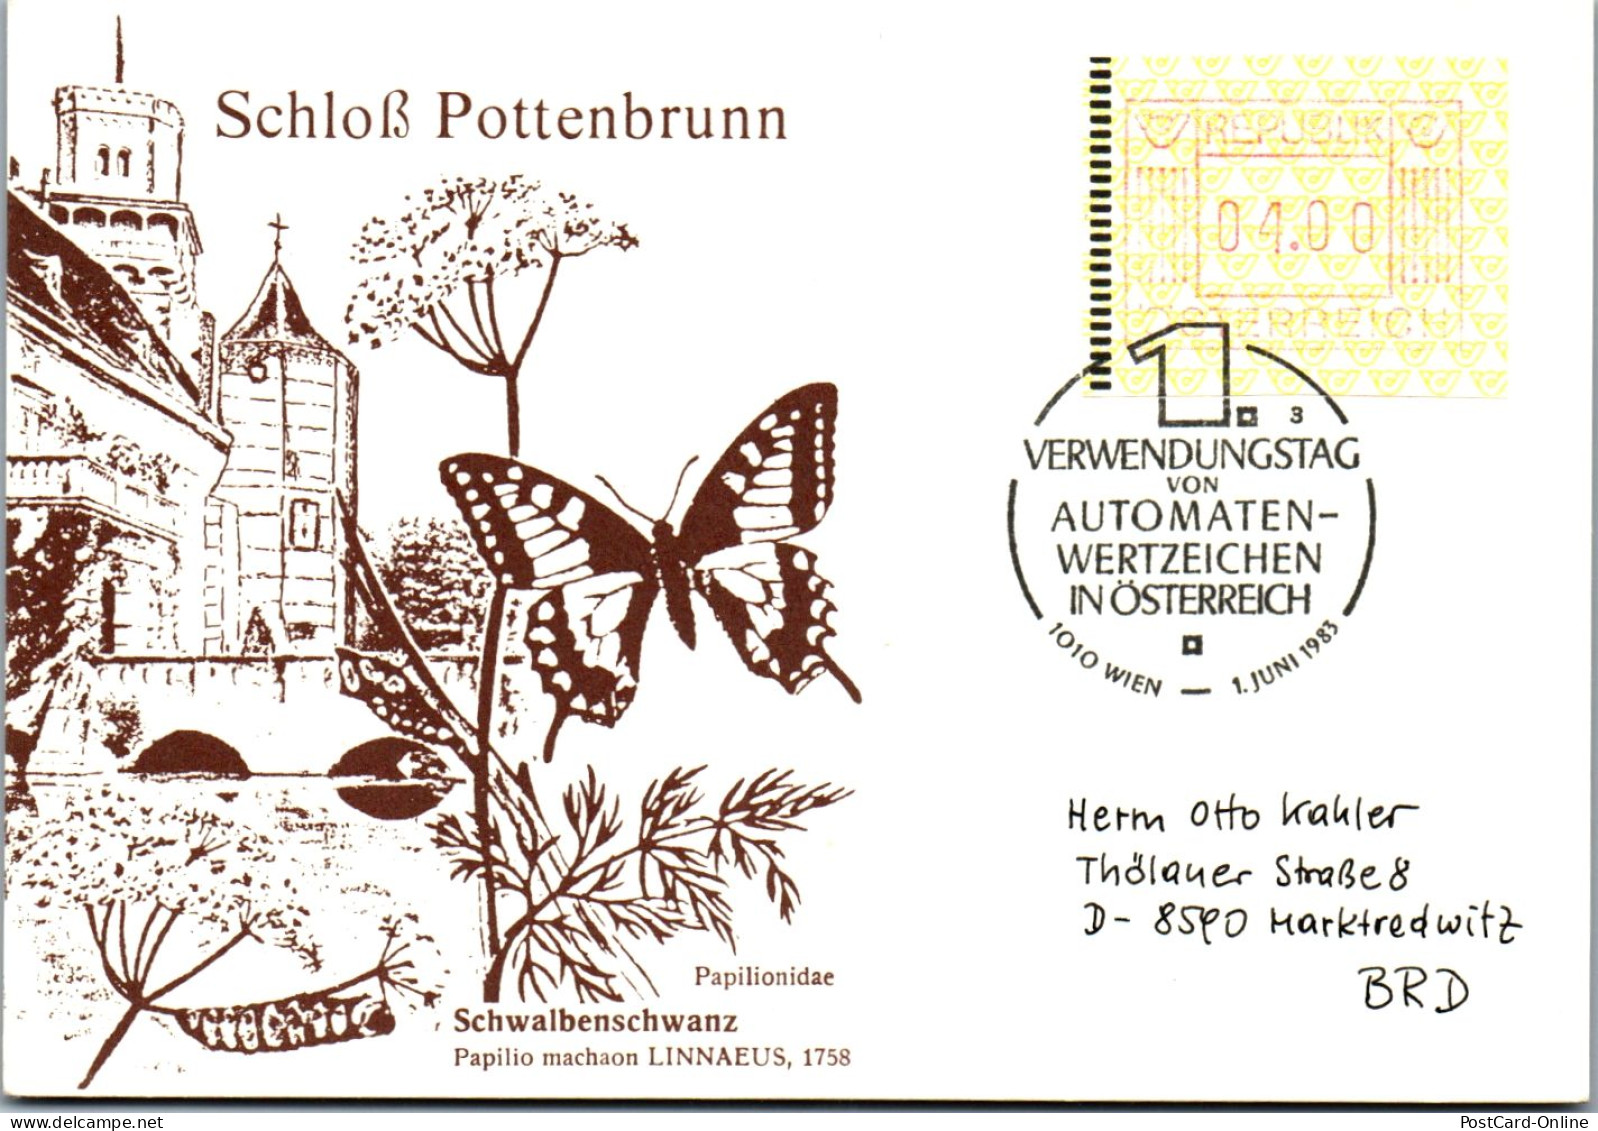 44581 - Österreich - Automatenmarke , Schloß Pottenbrunn , Automatenwertzeichen - Nicht Gelaufen 1983 - Machine Labels [ATM]